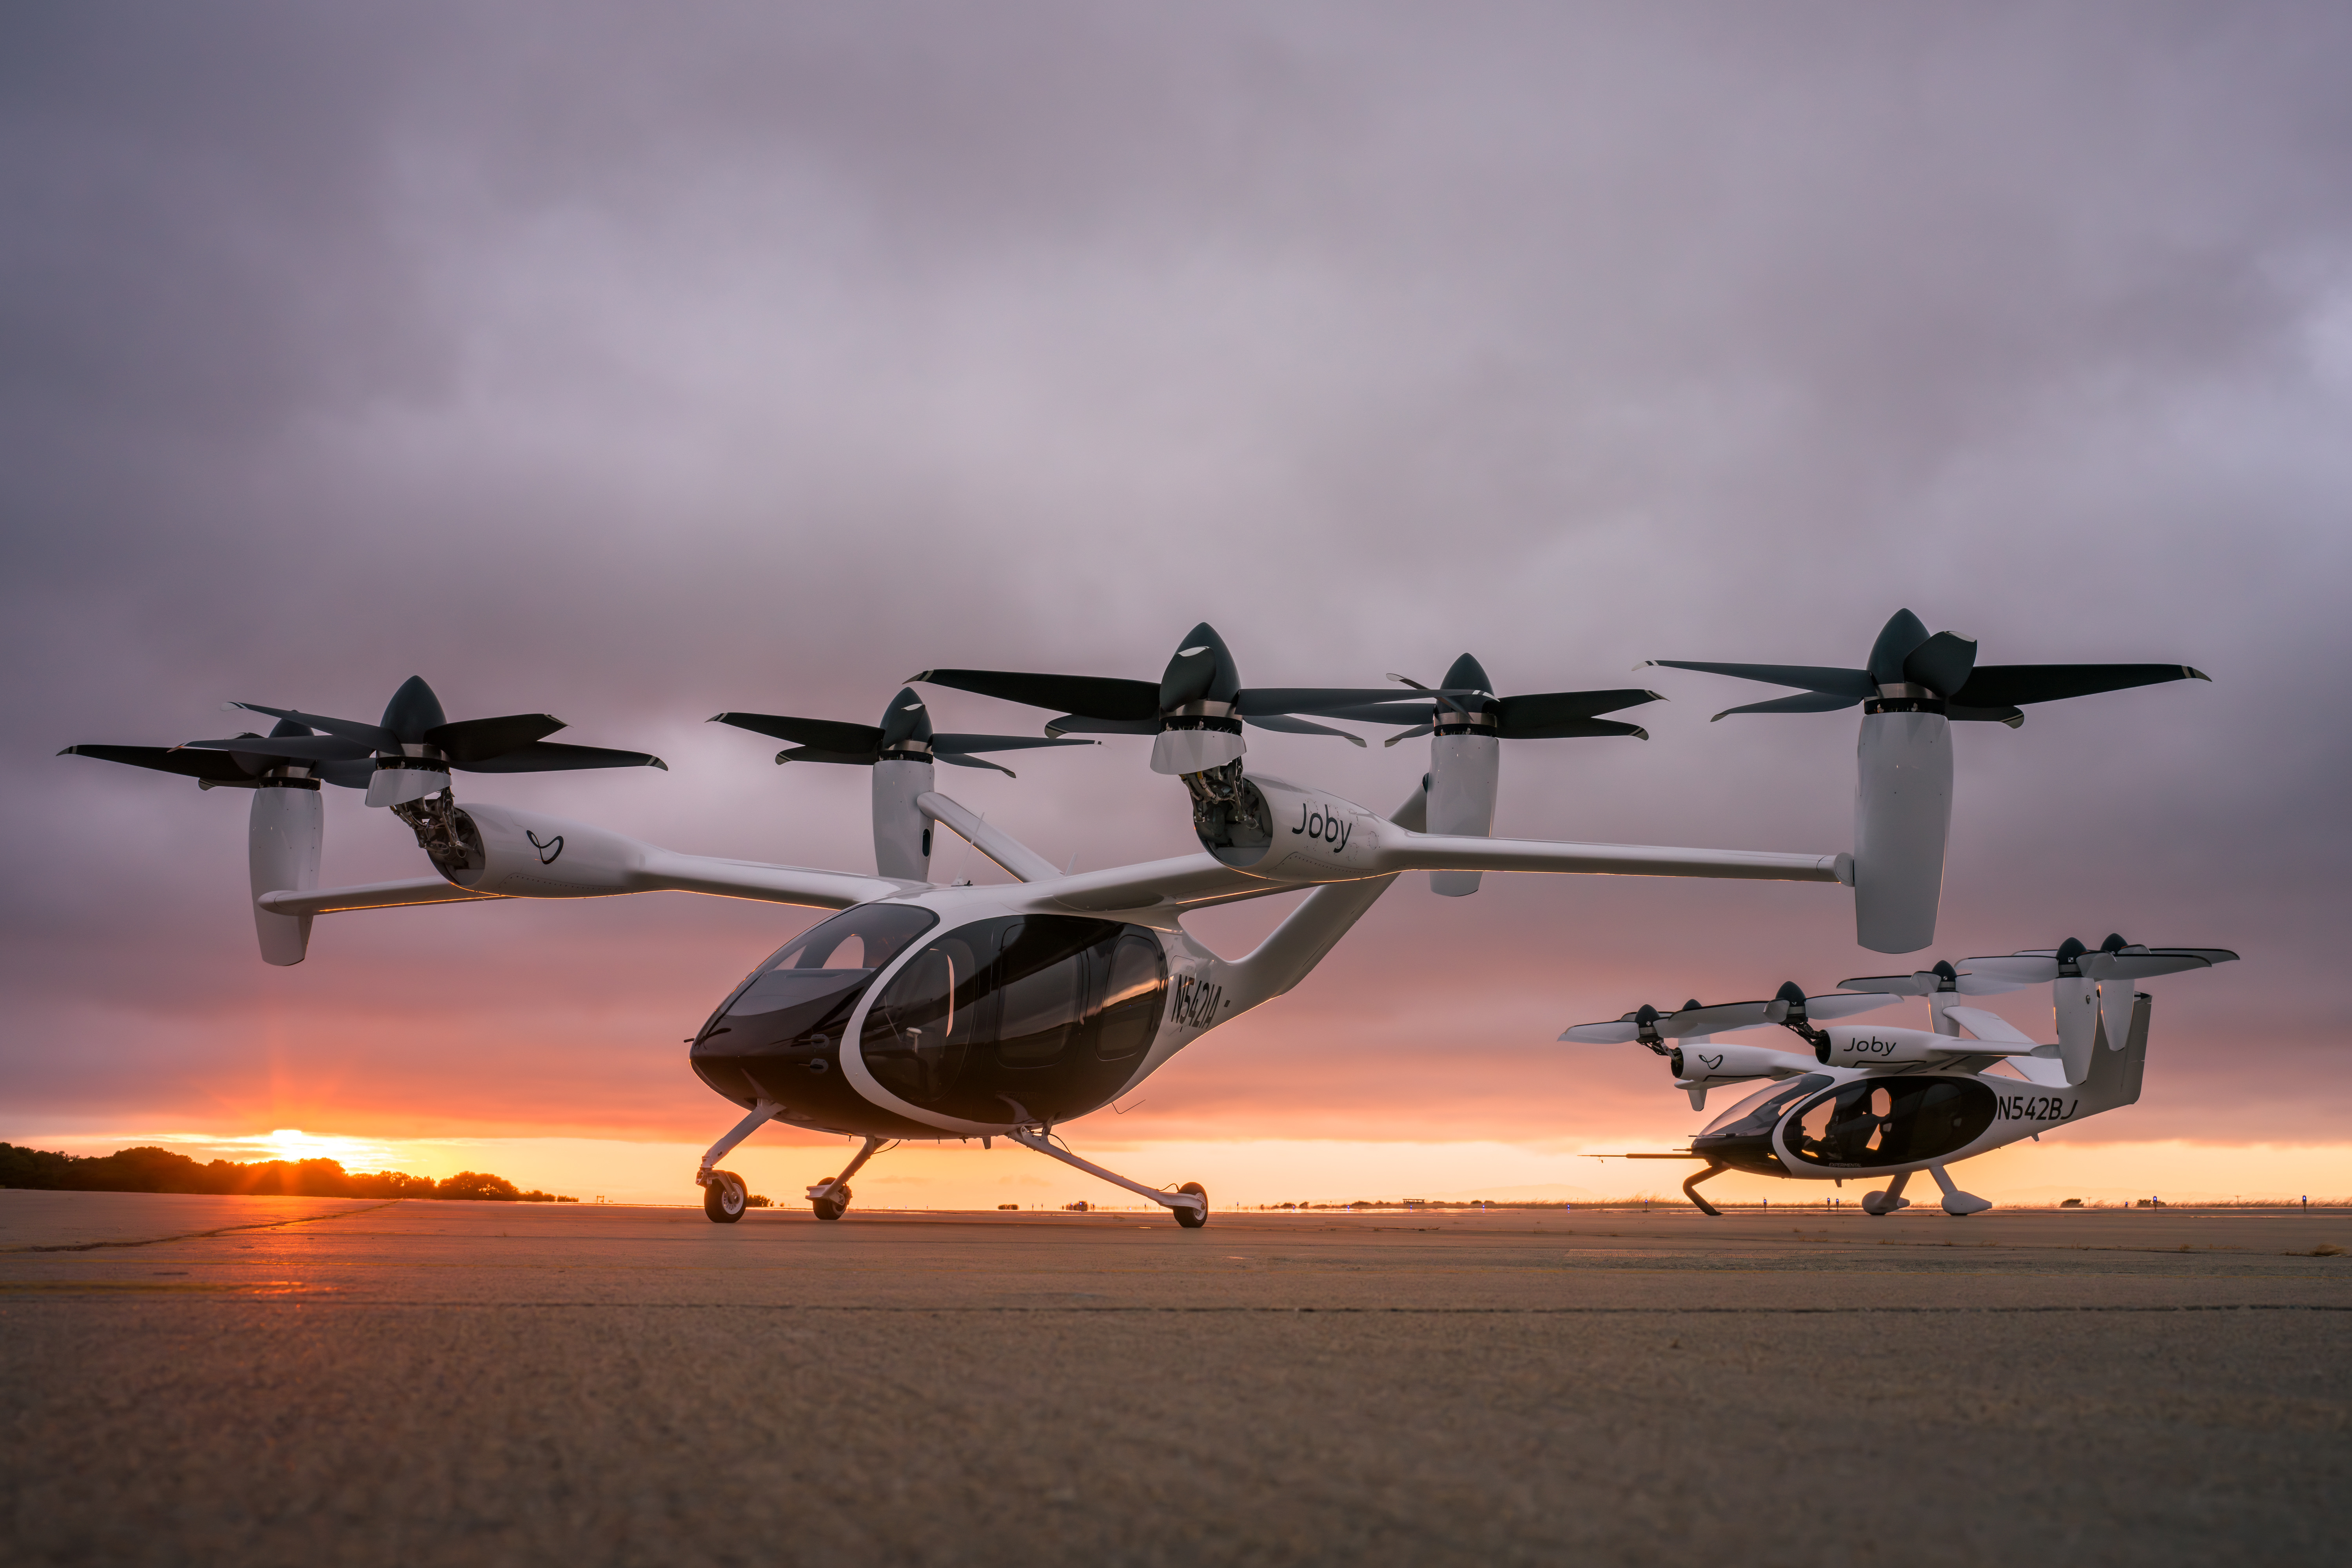 dos evtols de aviación joby frente a una puesta de sol